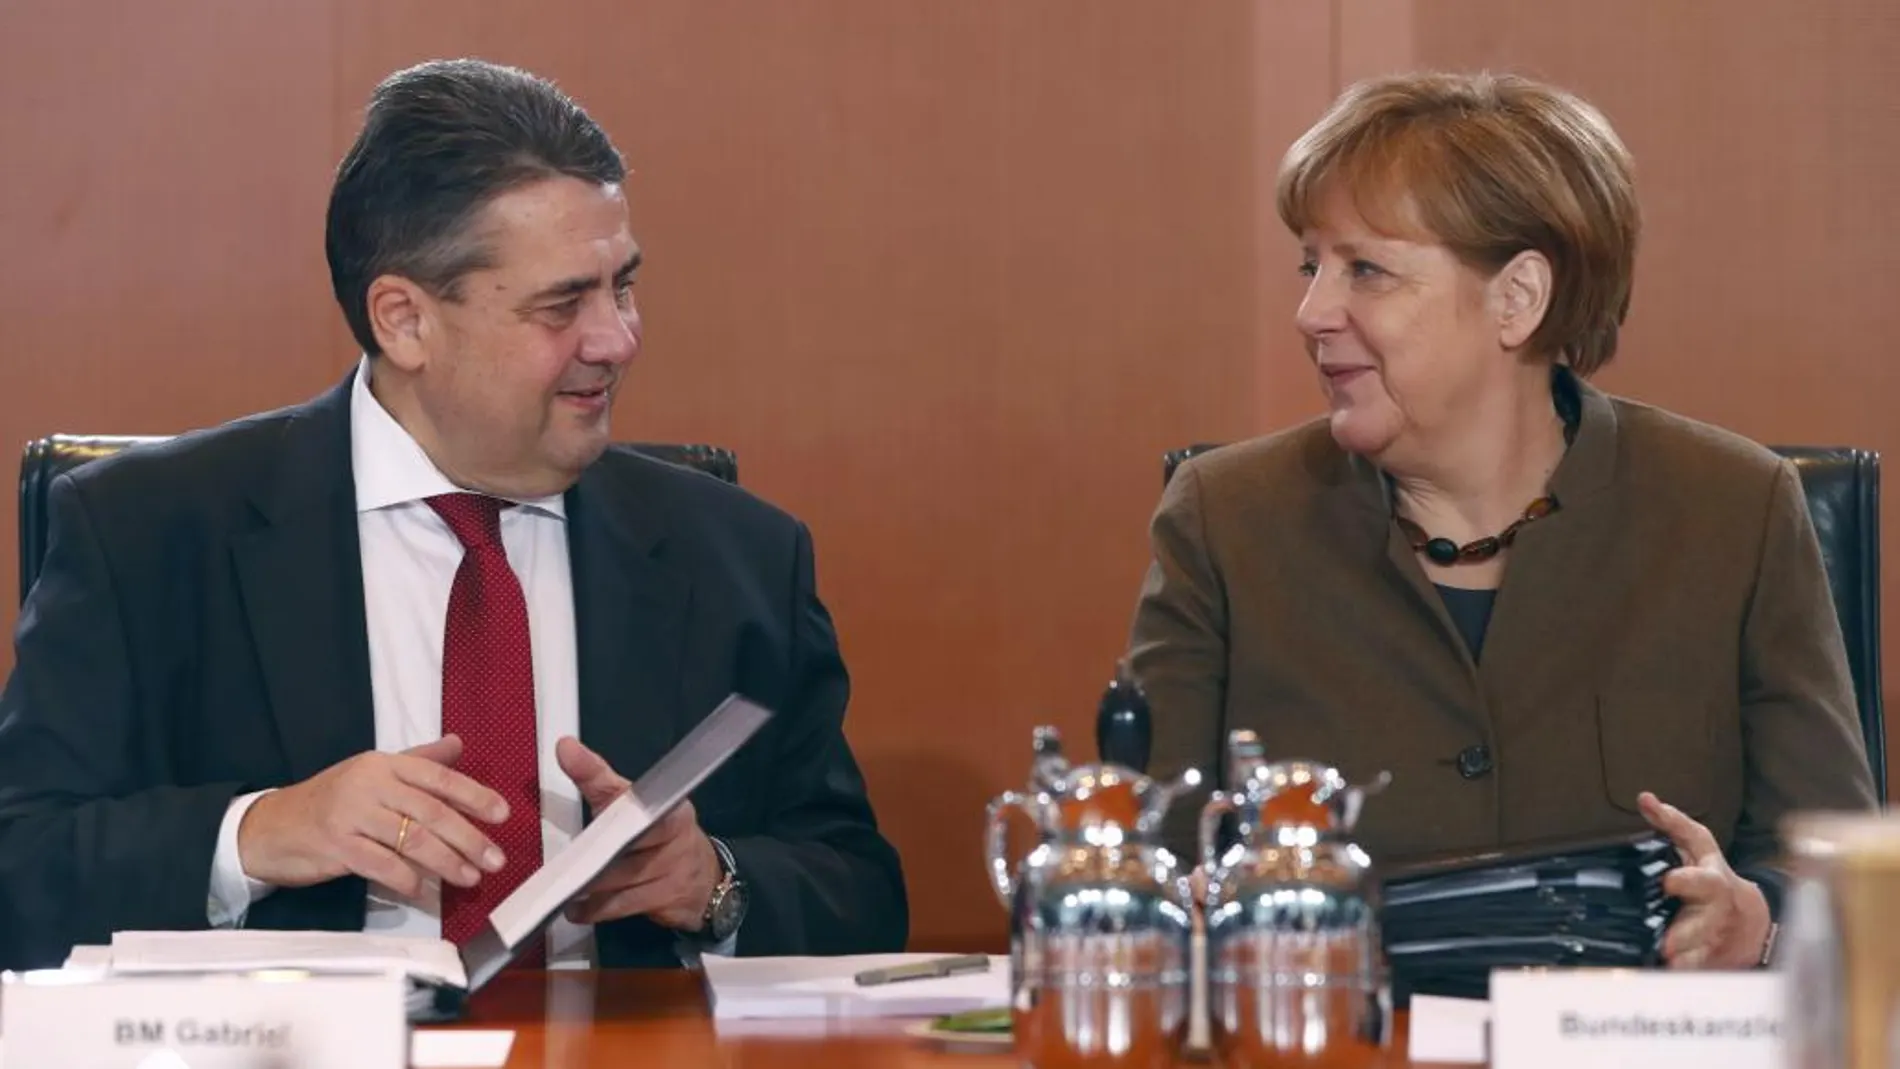 El ministro de Economía alemán Sigmar Gabriel y la canciller Angela Merkel en la reunión de hoy